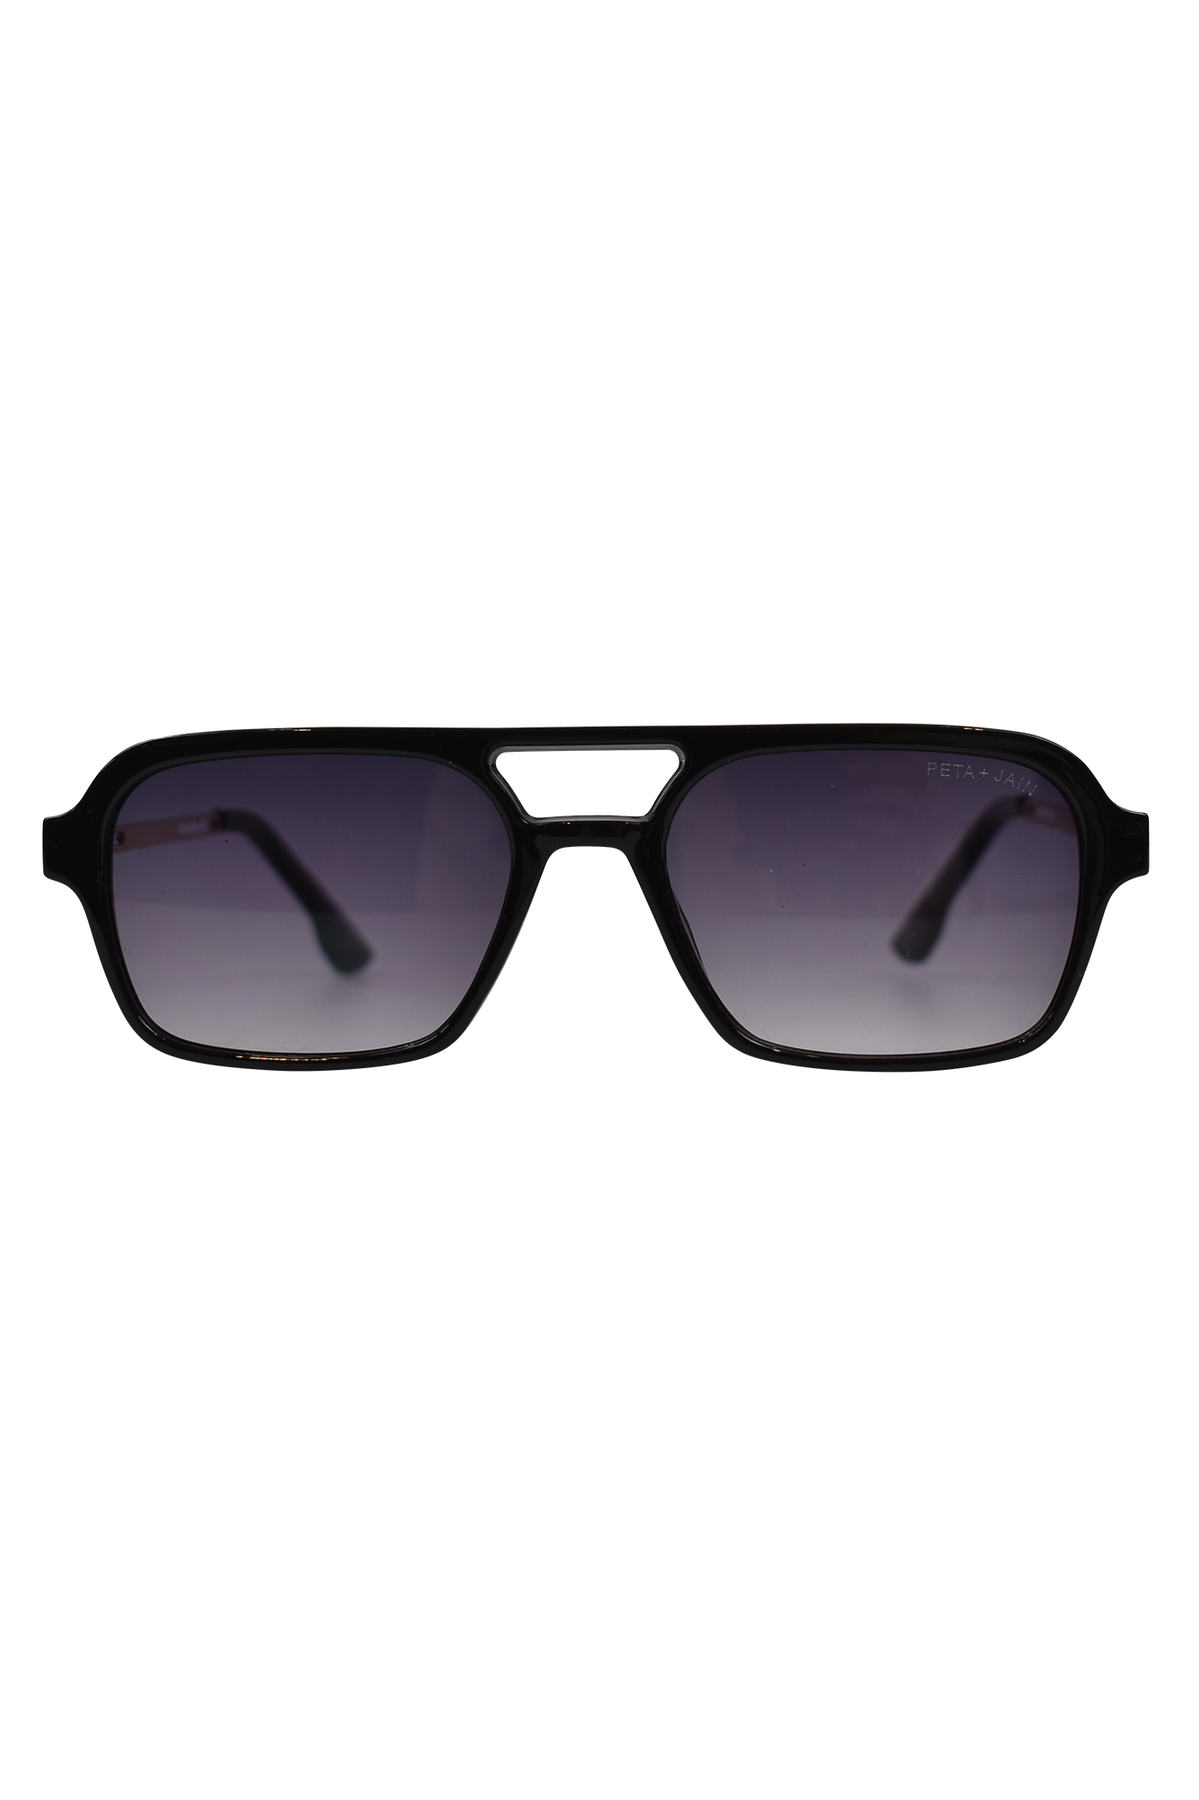 Peta And Jain Faris Aviator Sunglasses Black 